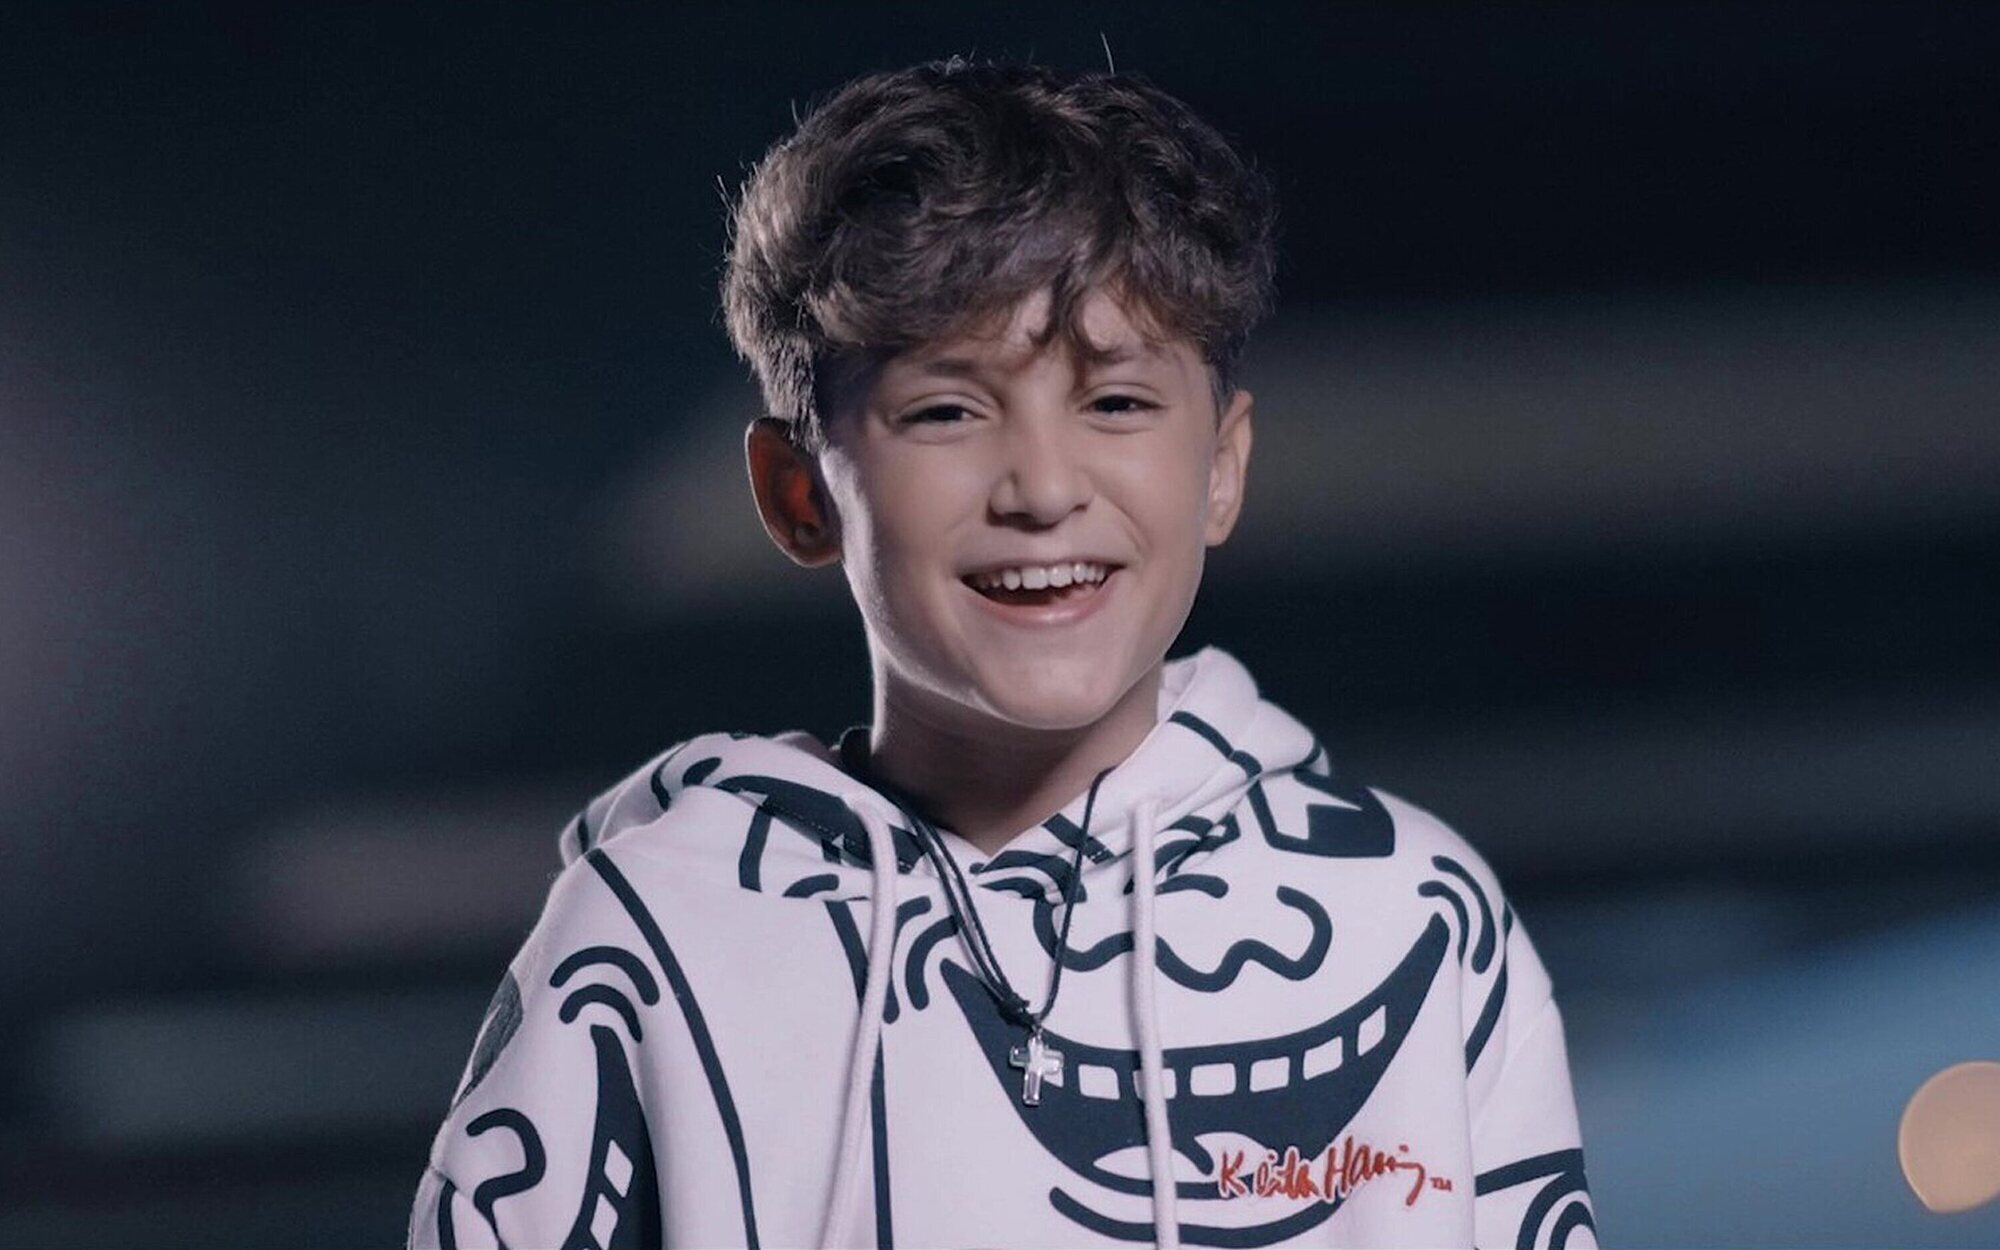 Eurovisión Junior 2022: Carlos Higes actuará en el undécimo puesto con su tema "Señorita"